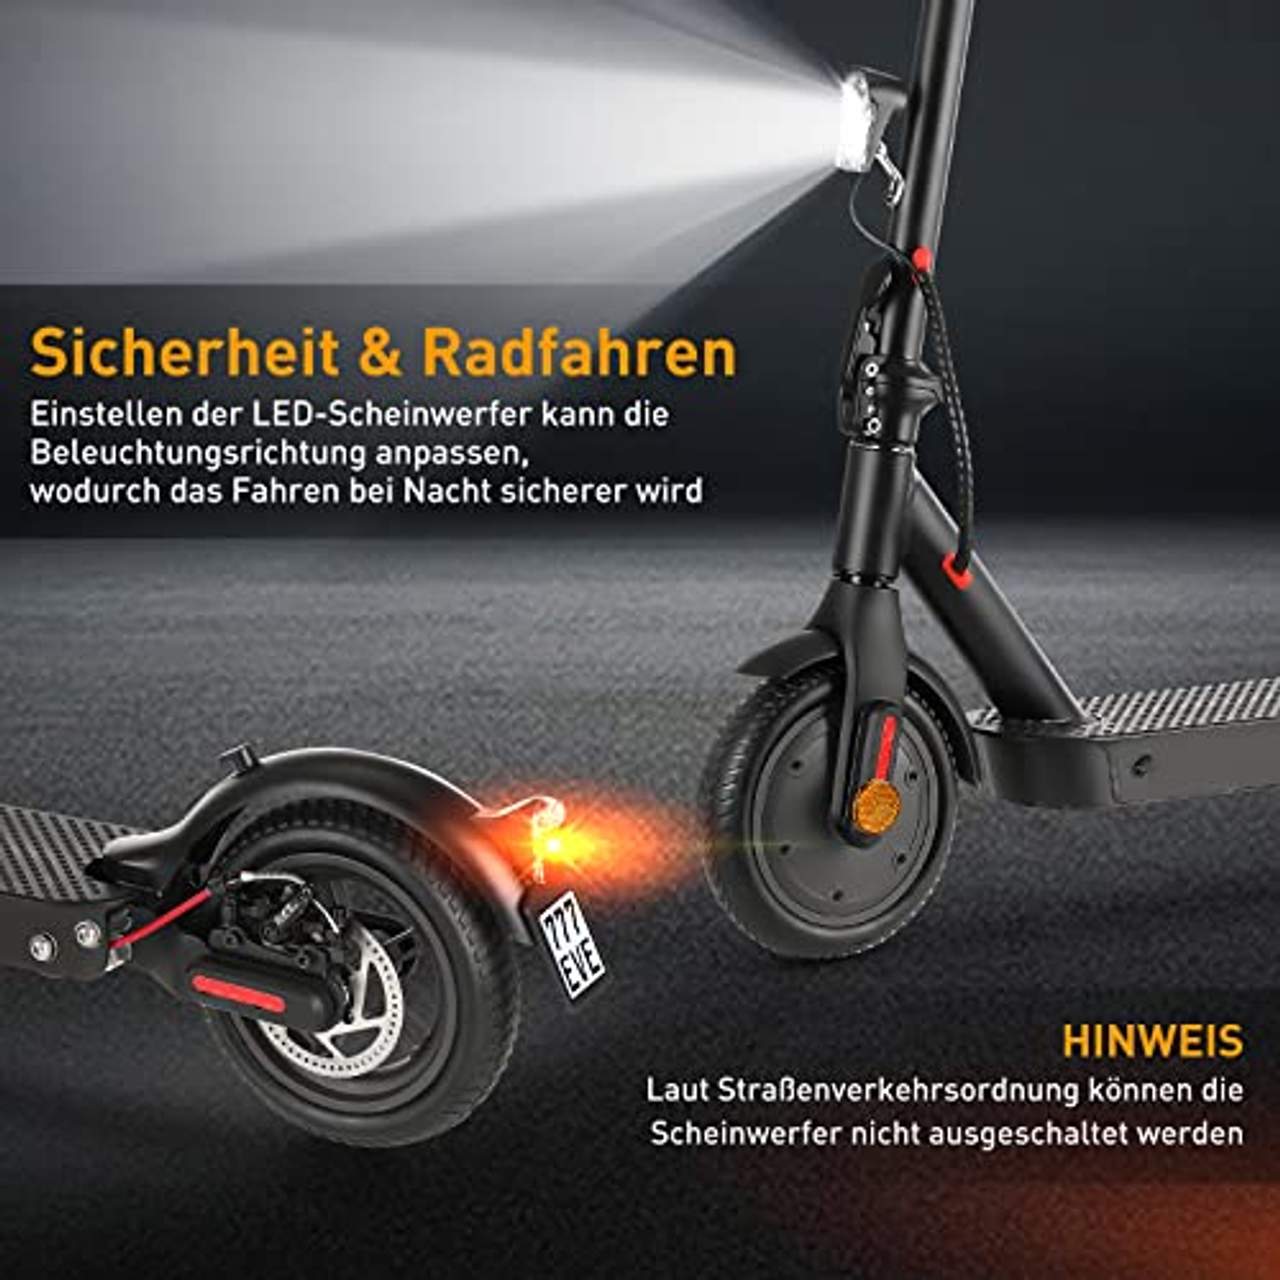 E Scooter mit Straßenzulassung ABE Elektroroller Belastung bis 120kg